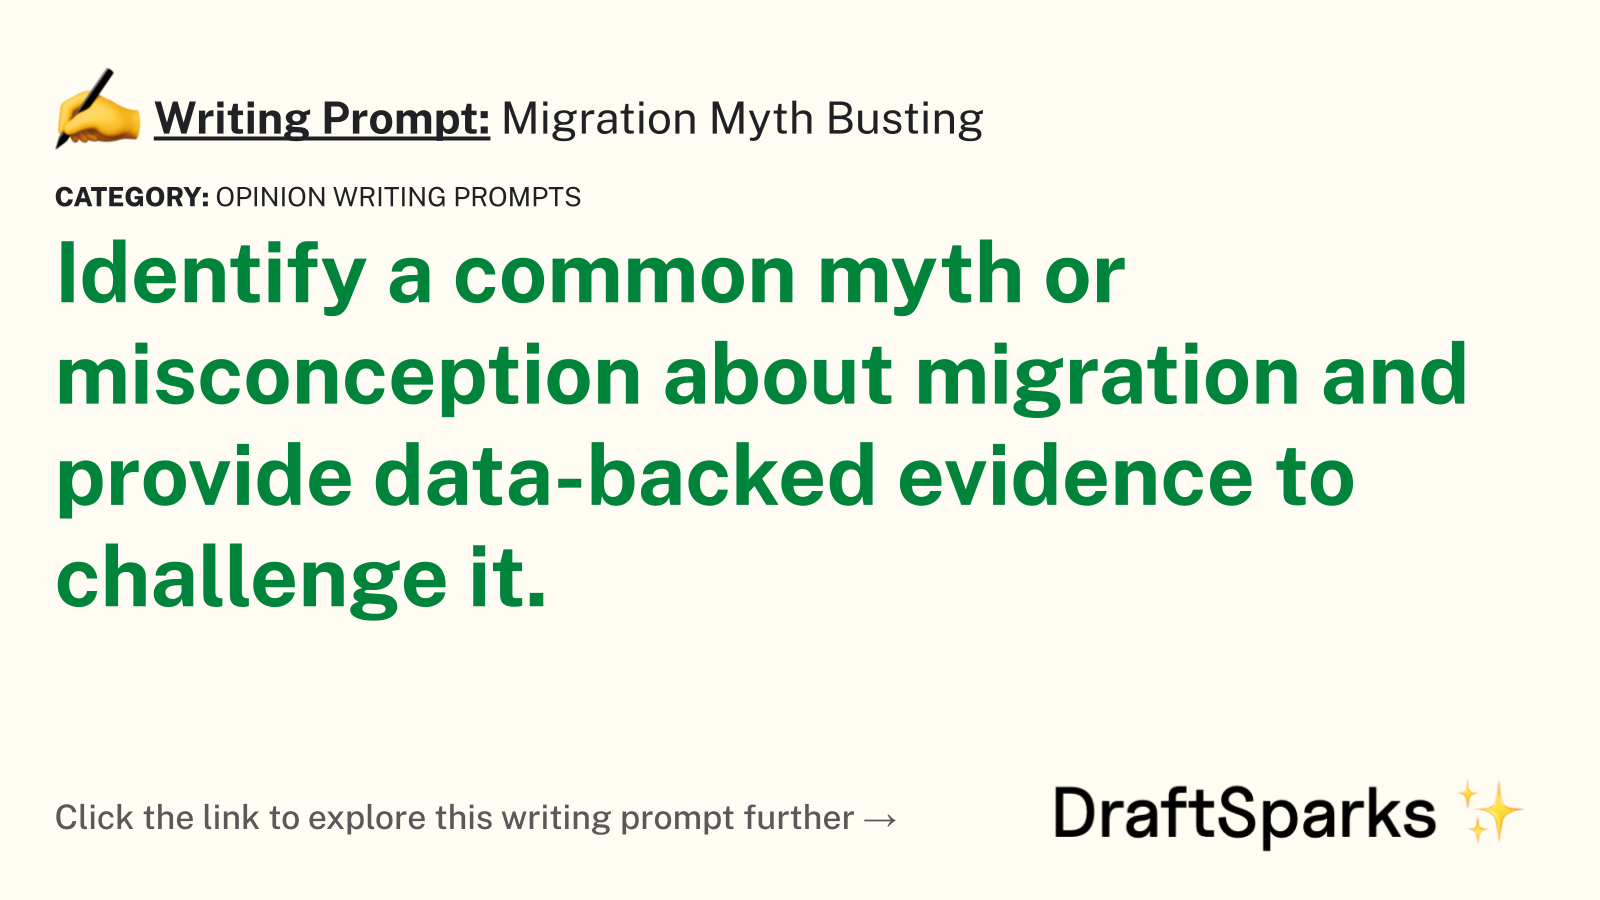 Migration Myth Busting